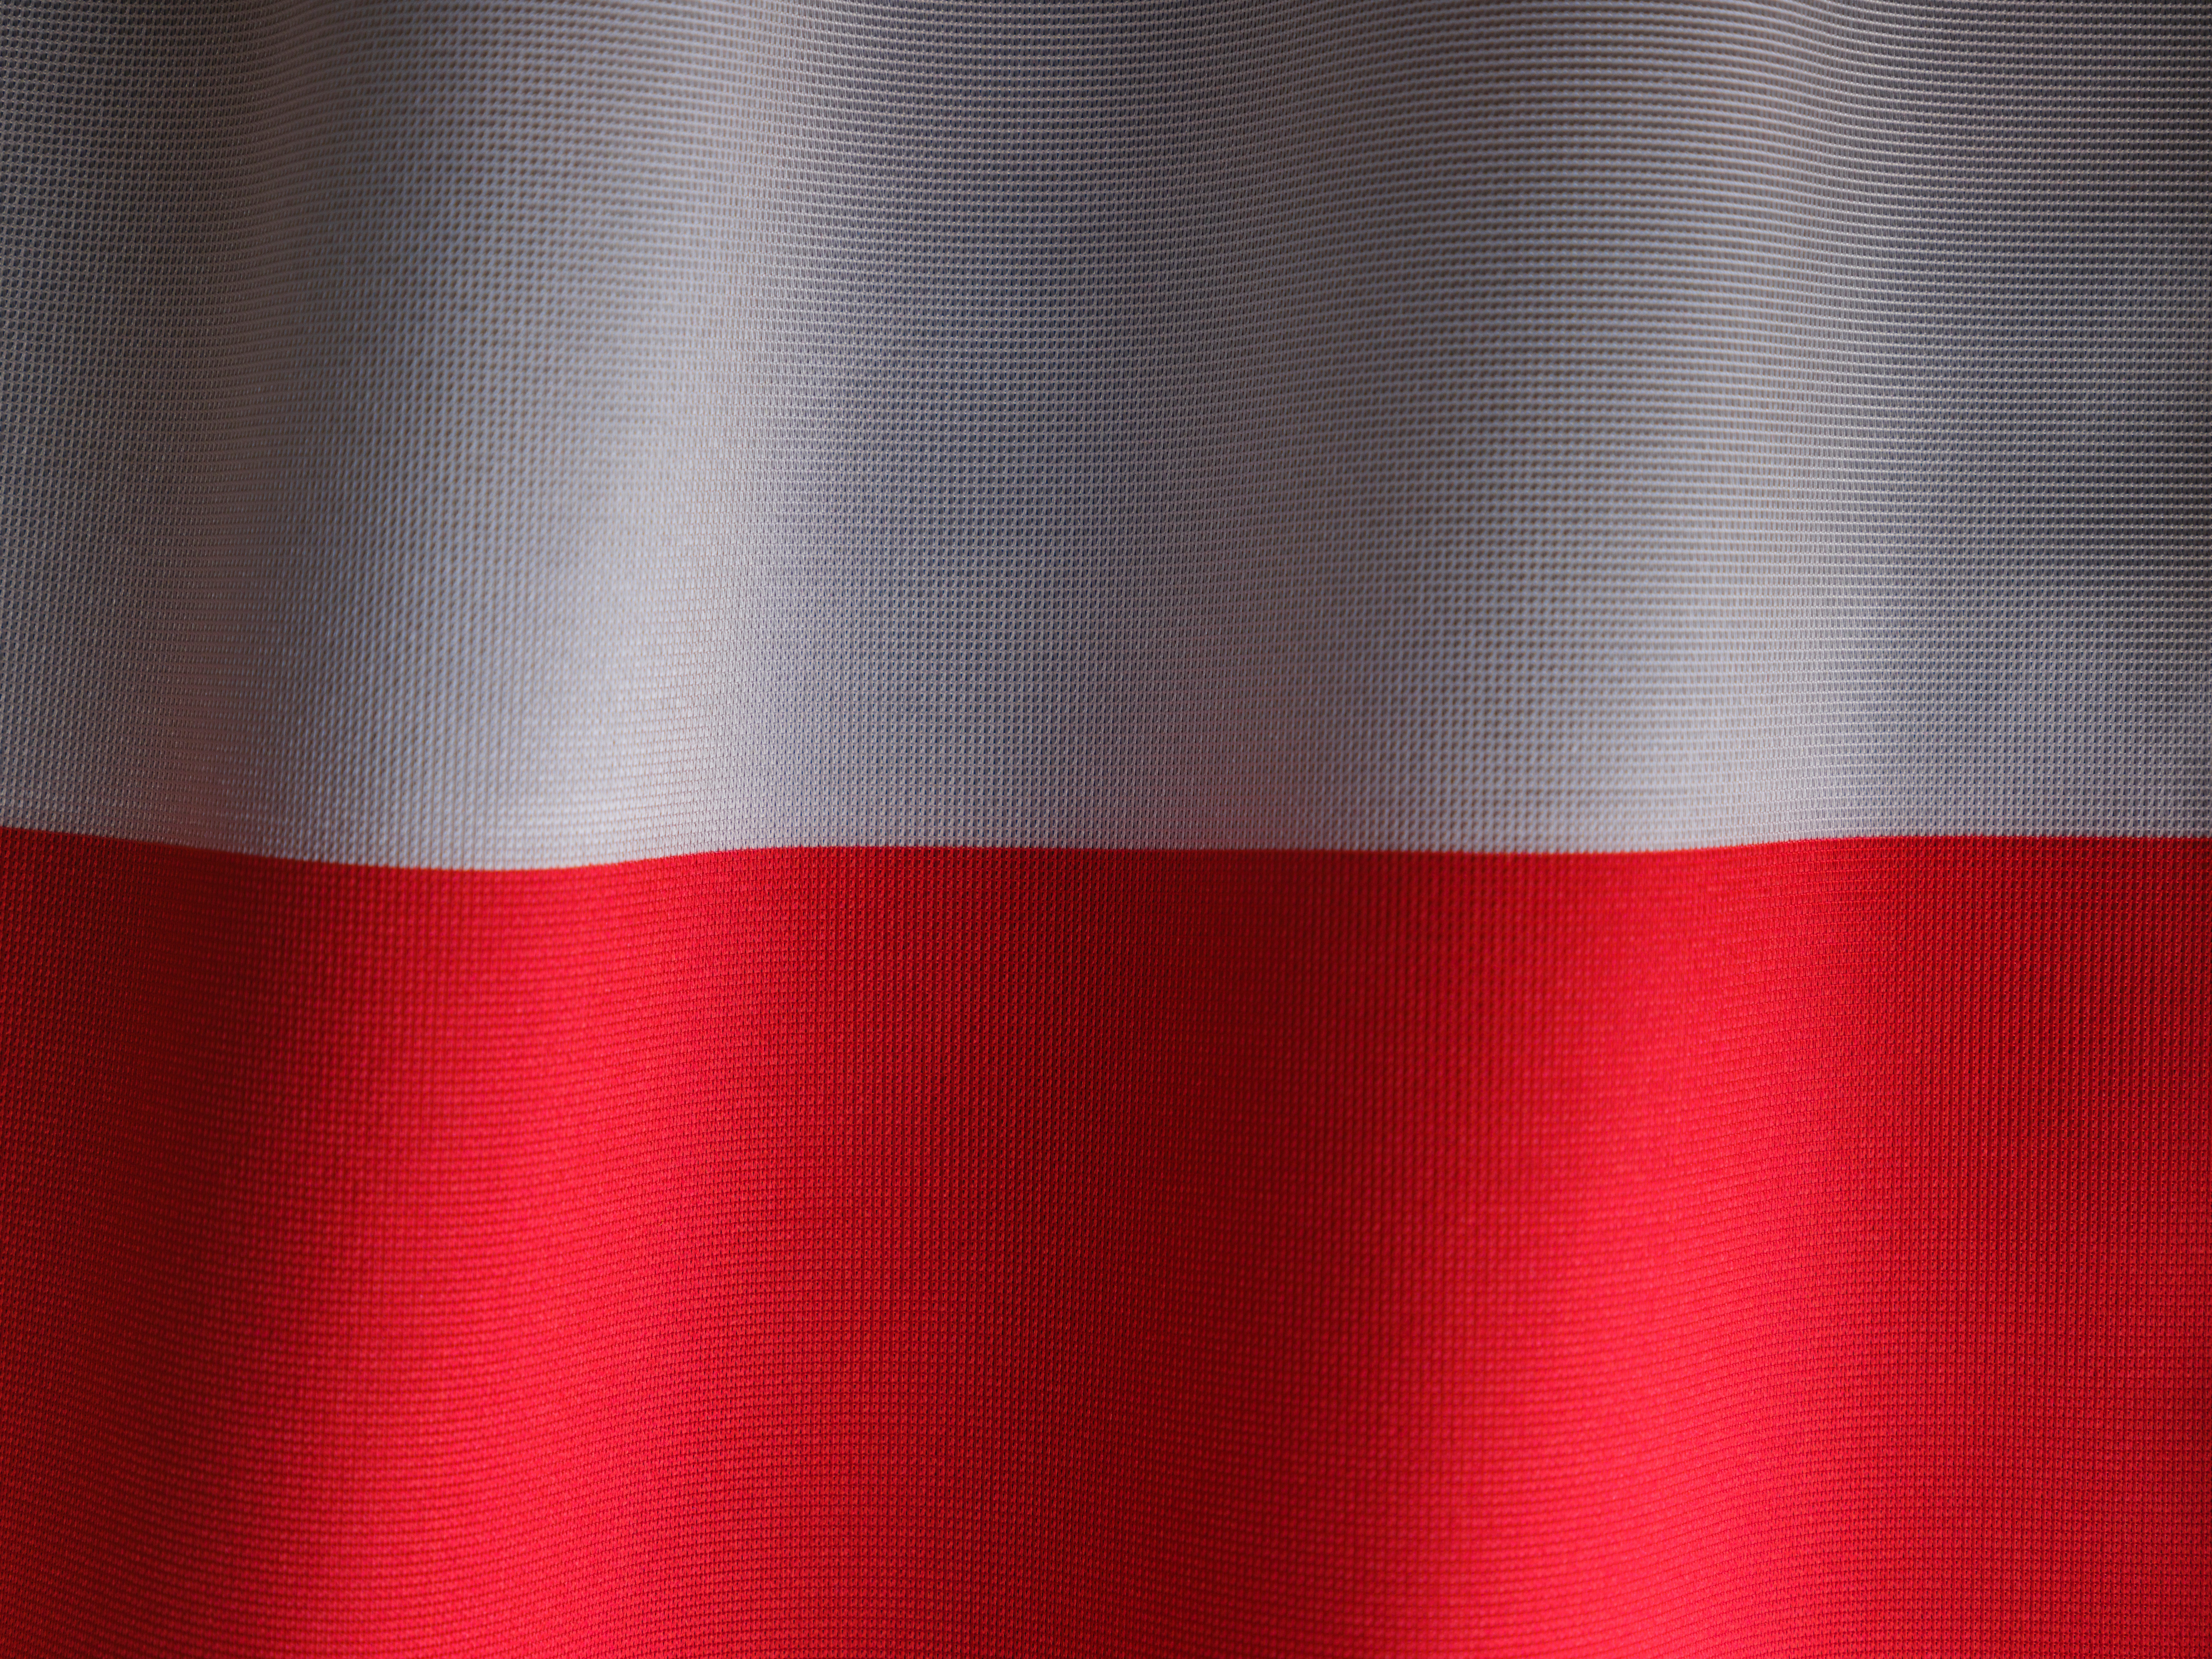 stylized flag of Poland